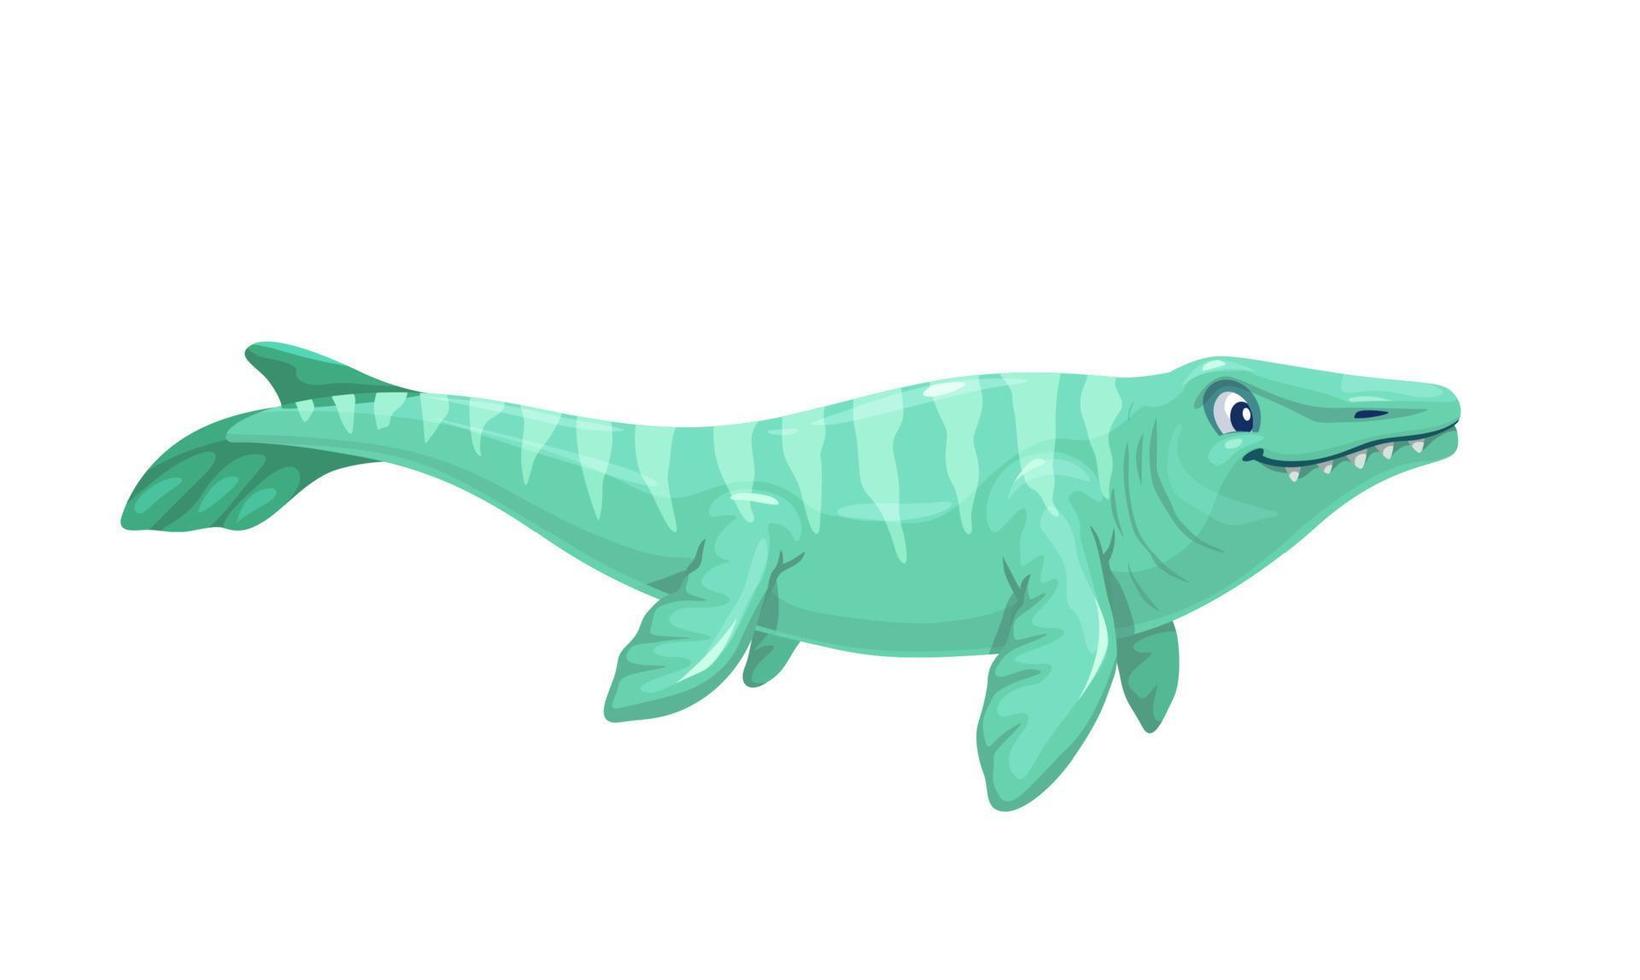 Cartoon mosasaurus dino character aquatic reptile vector